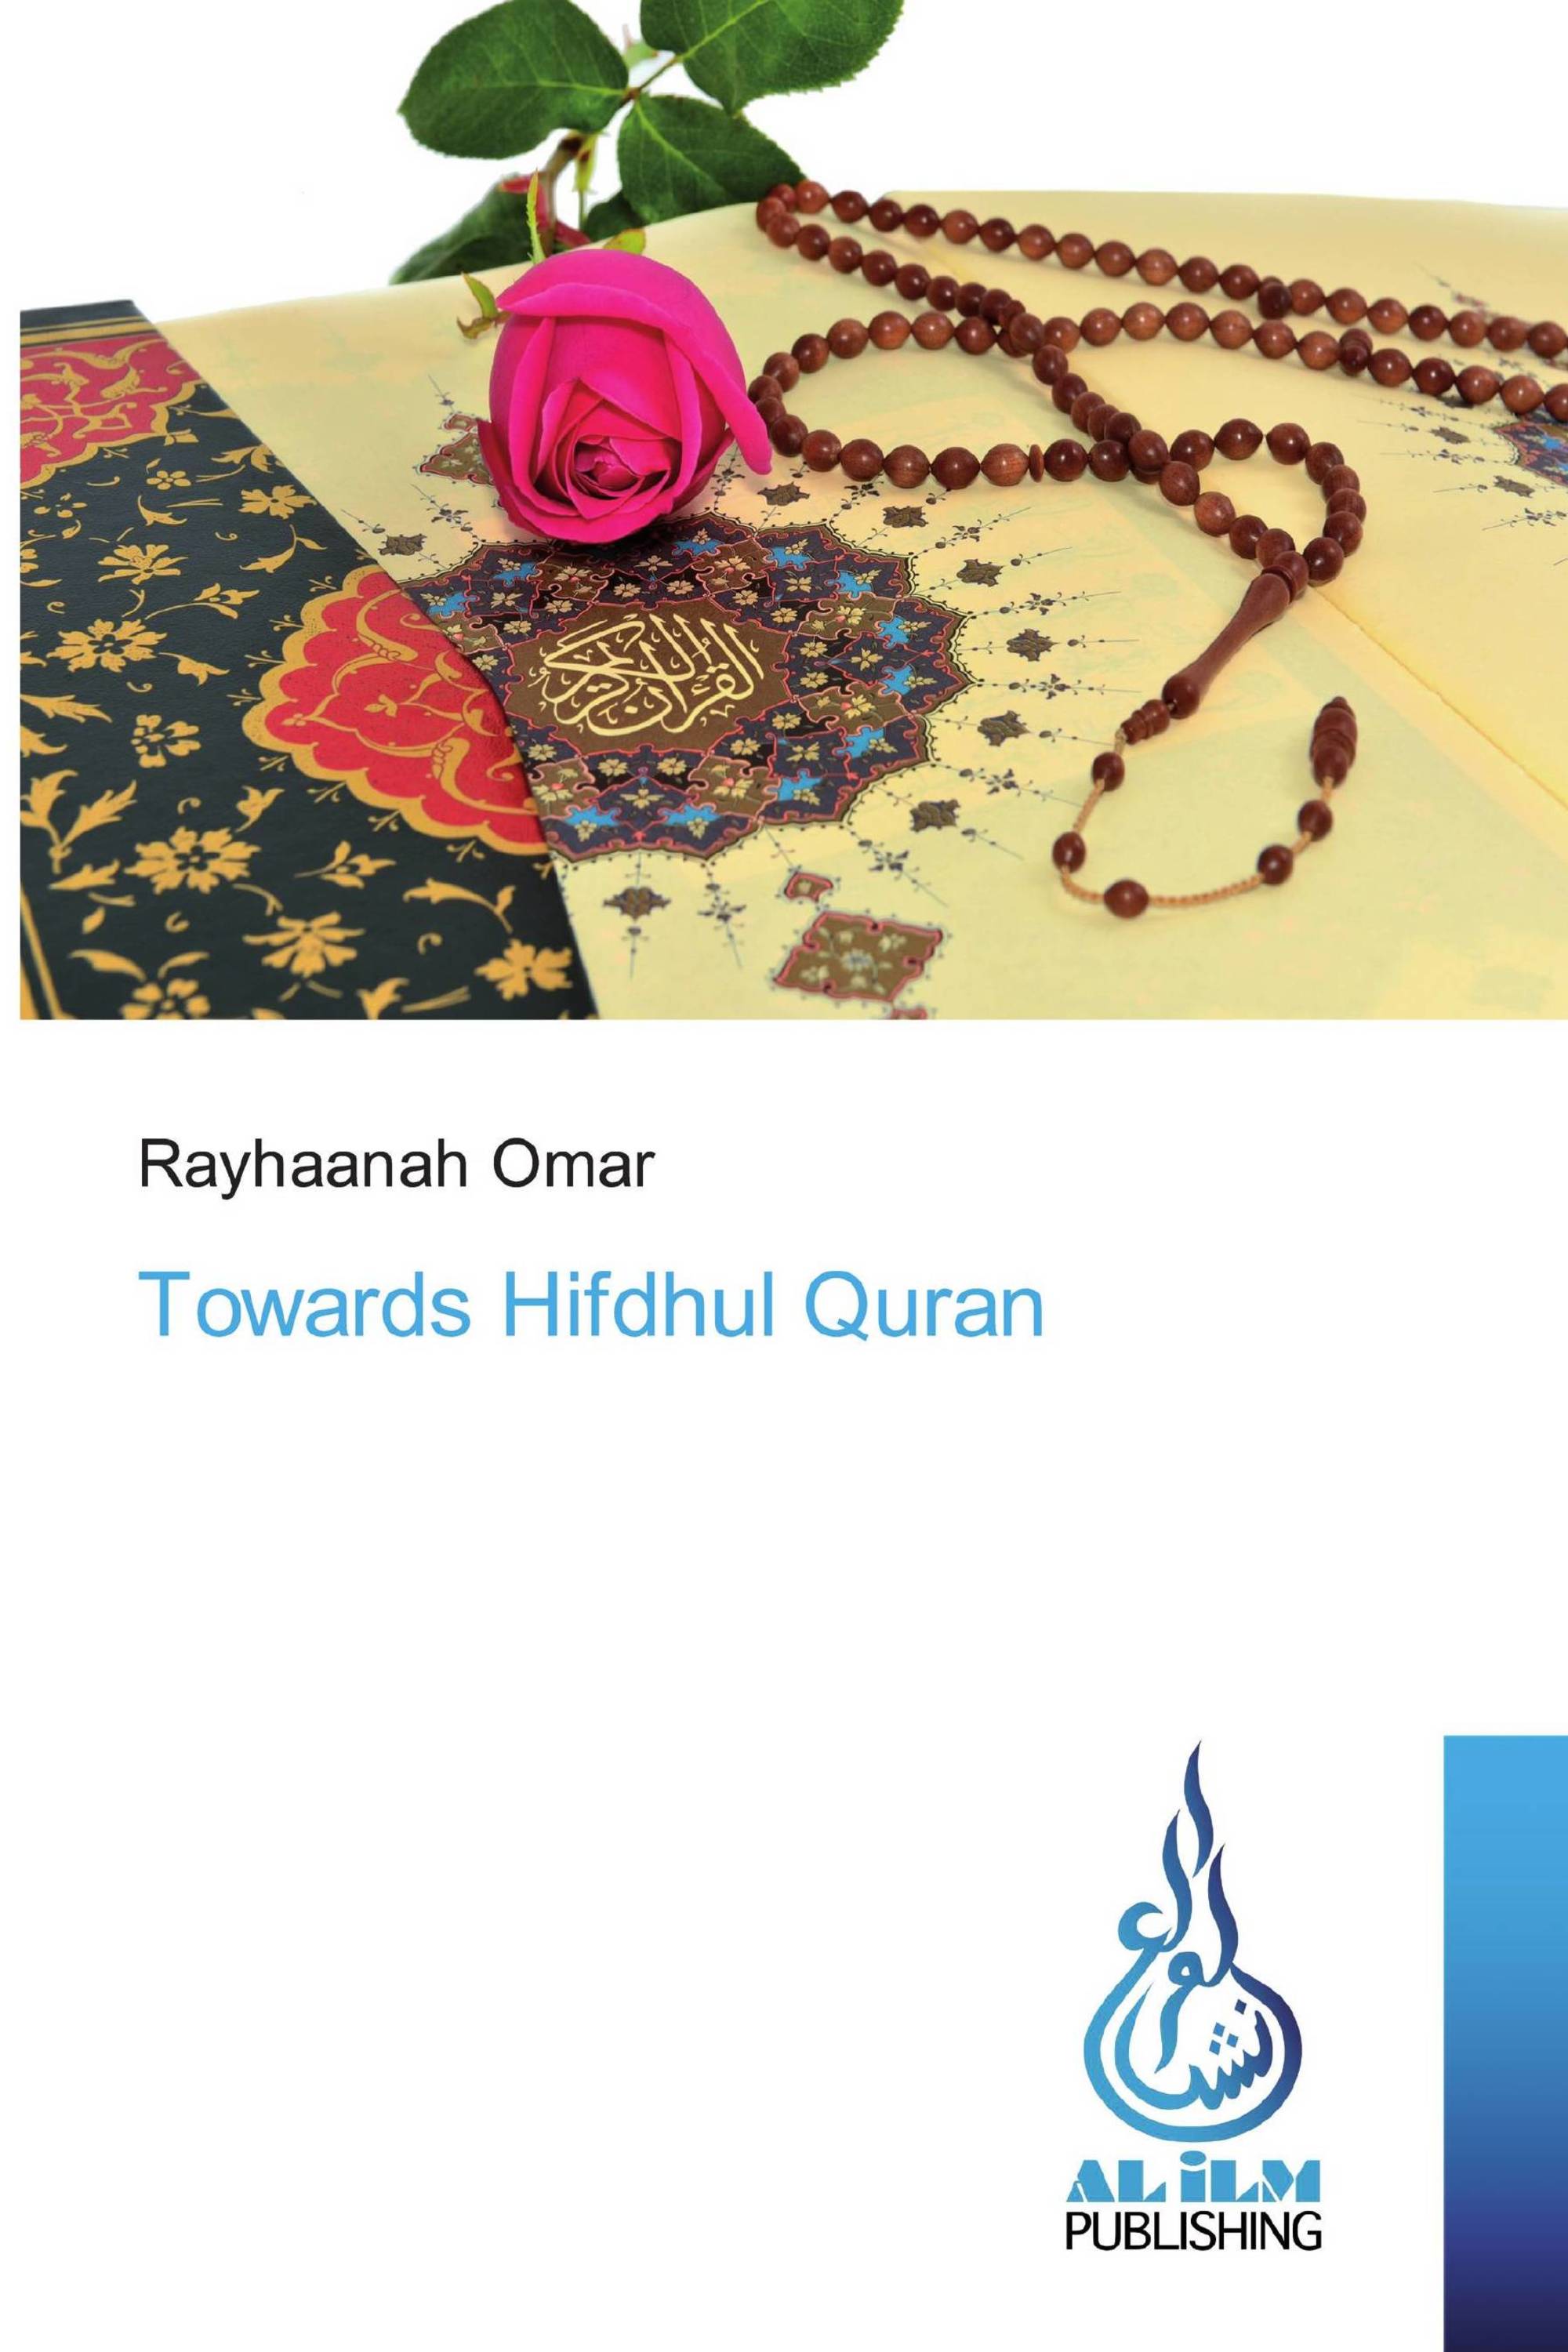 Towards Hifdhul Quran